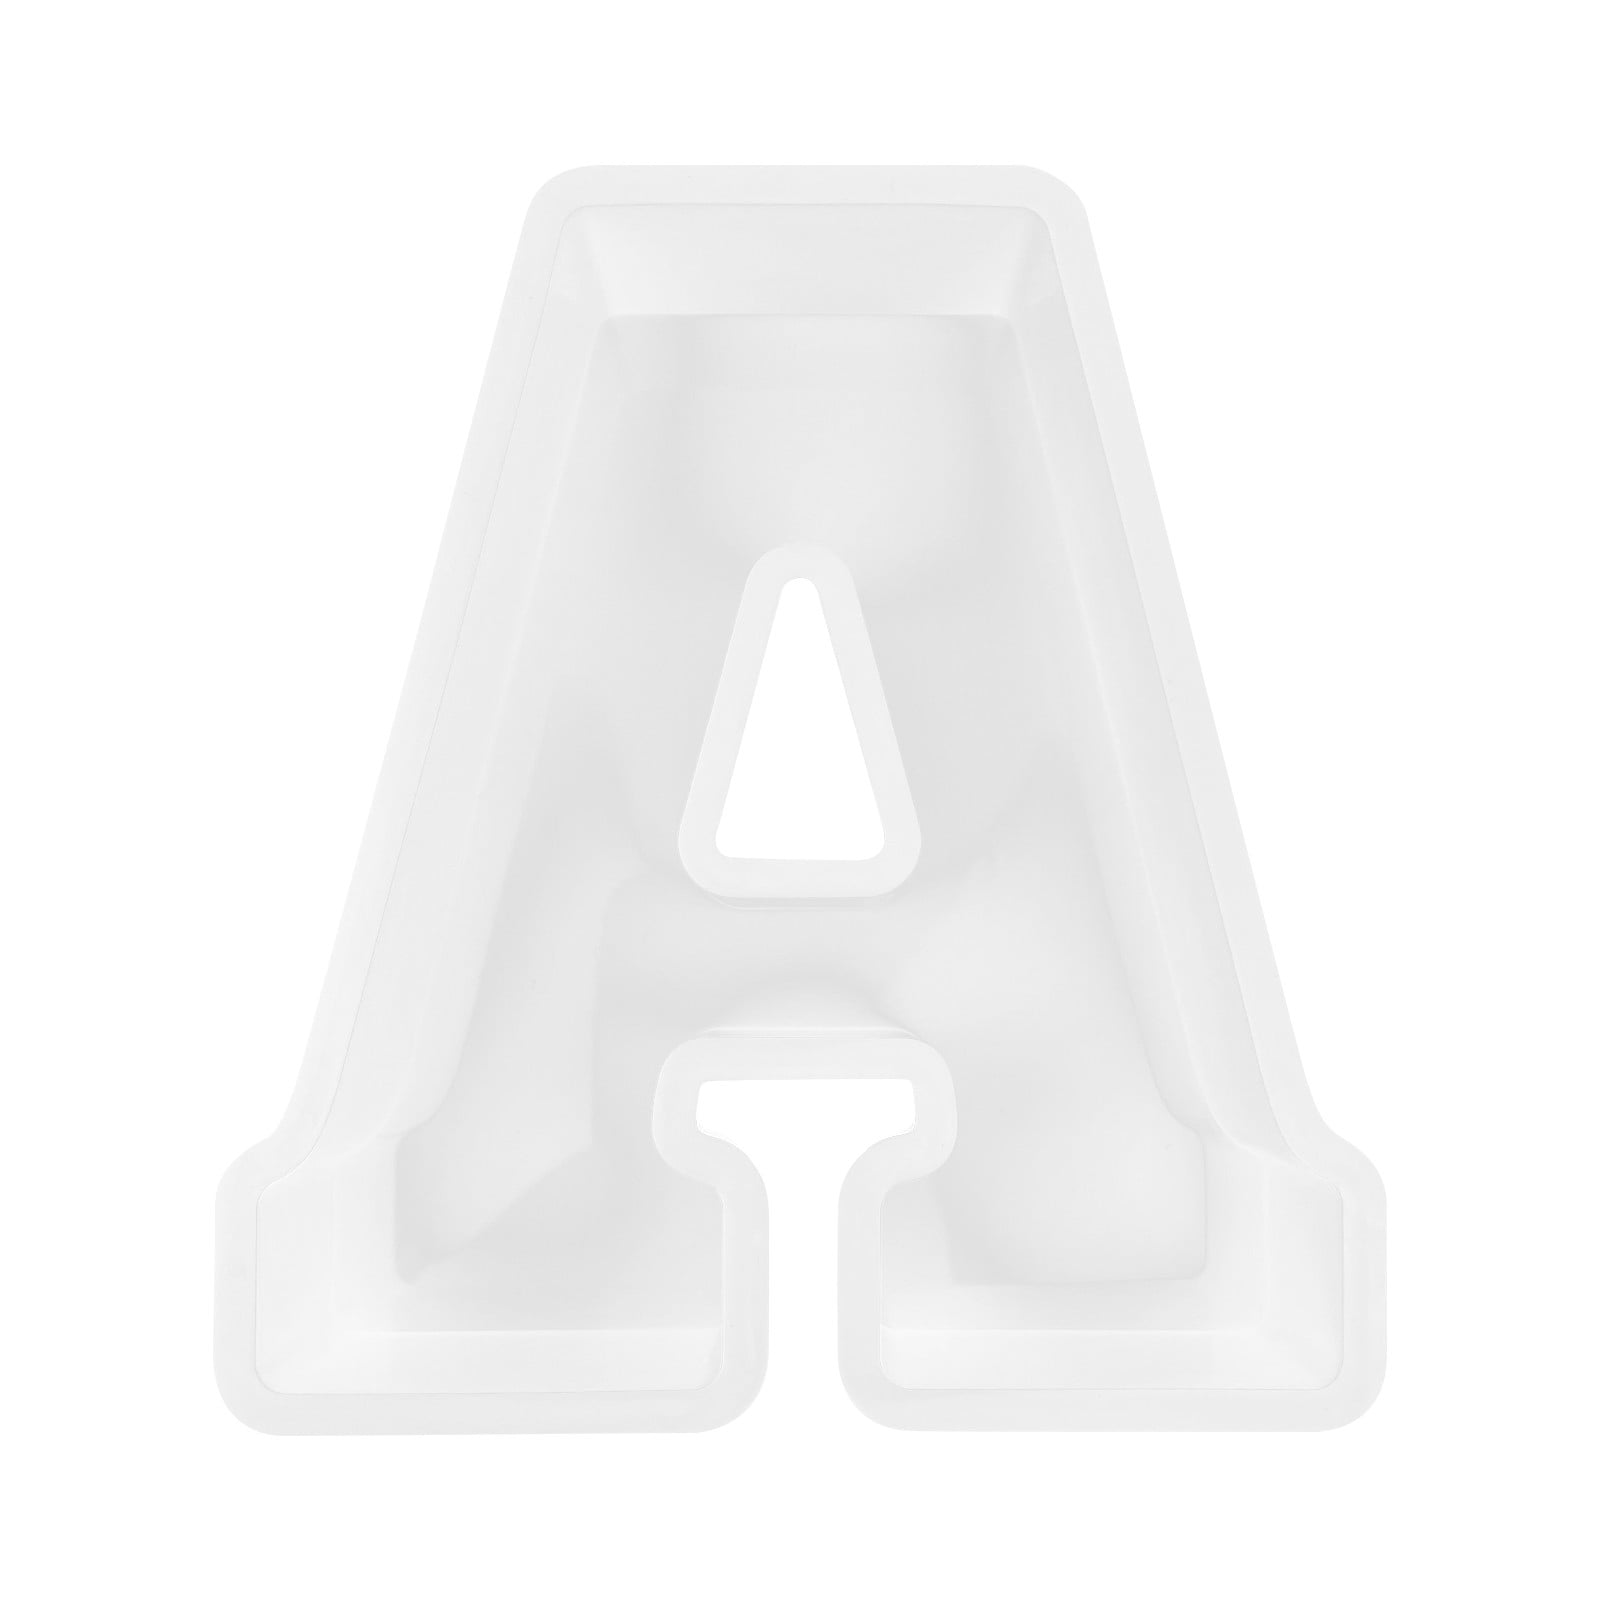 Large D plastic letter alphabet mold 